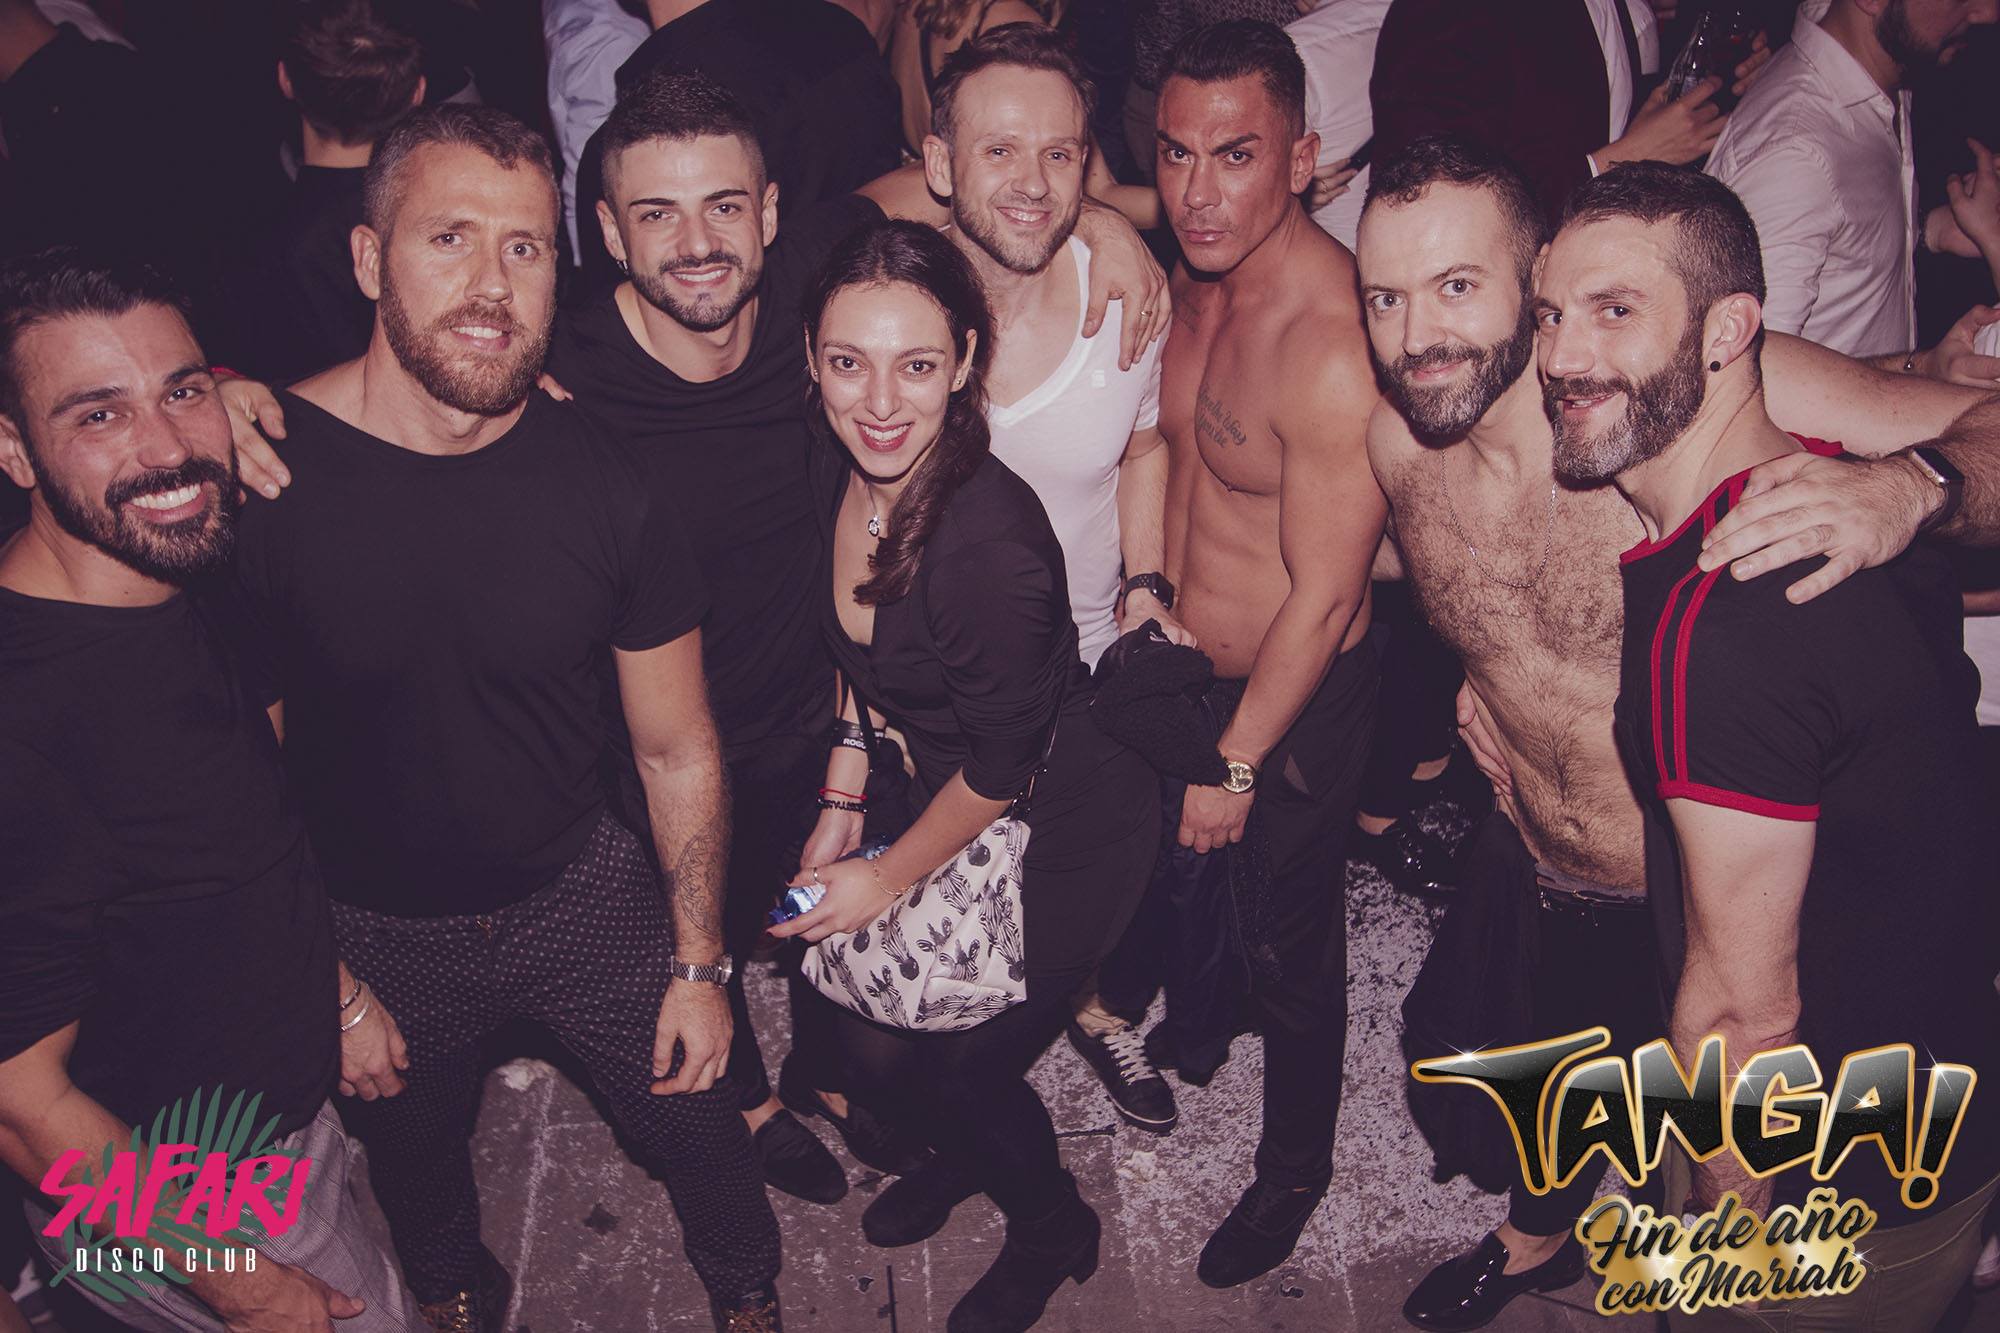 Safari Disco Club Barcelone